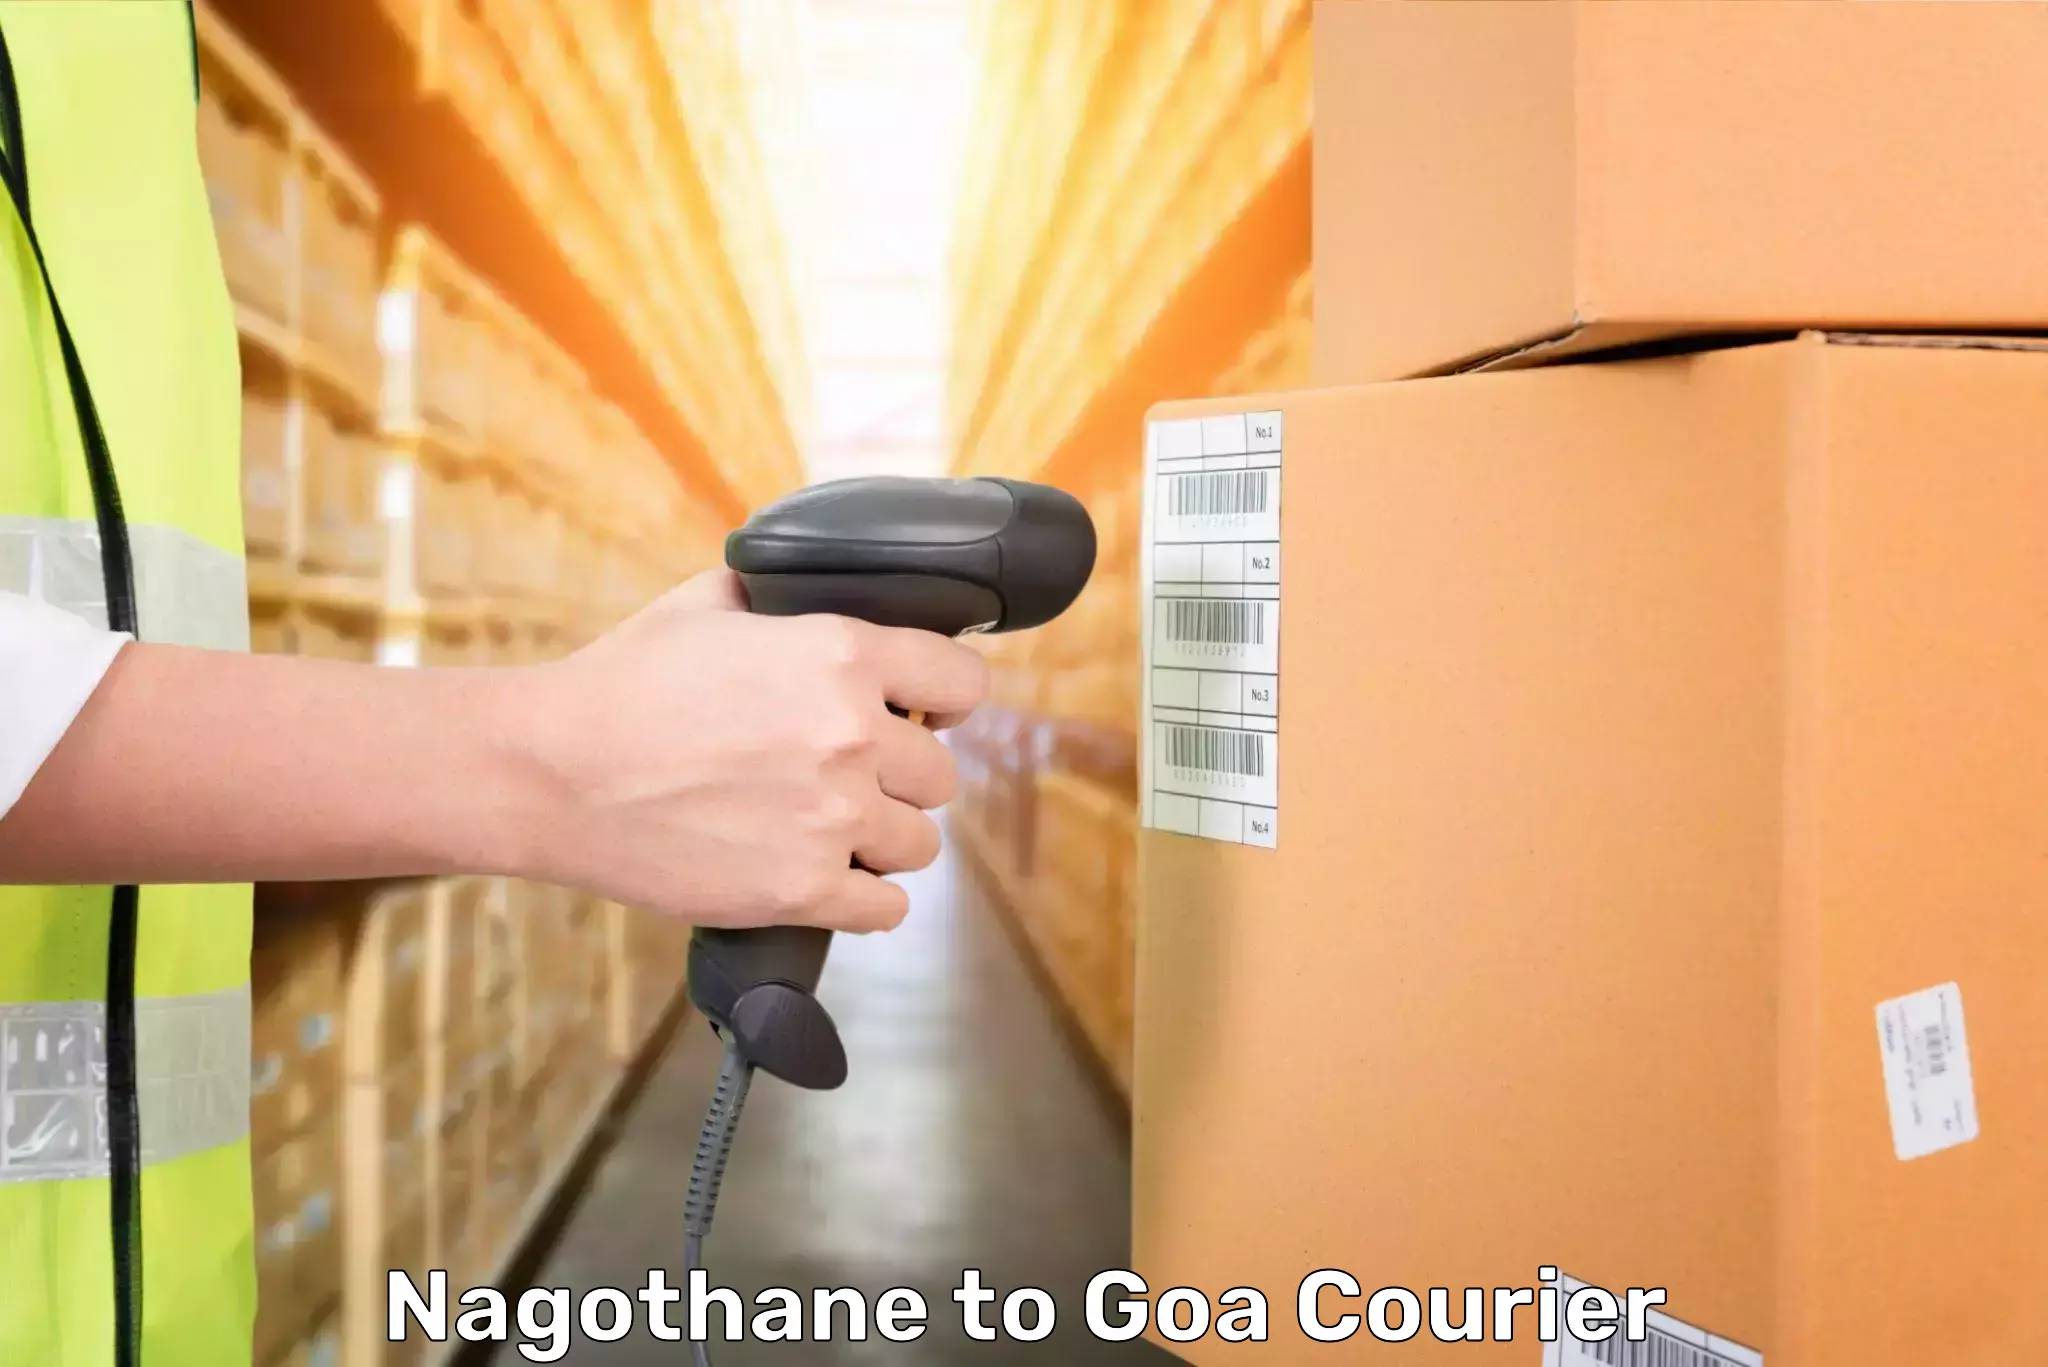 Same day luggage service Nagothane to Goa